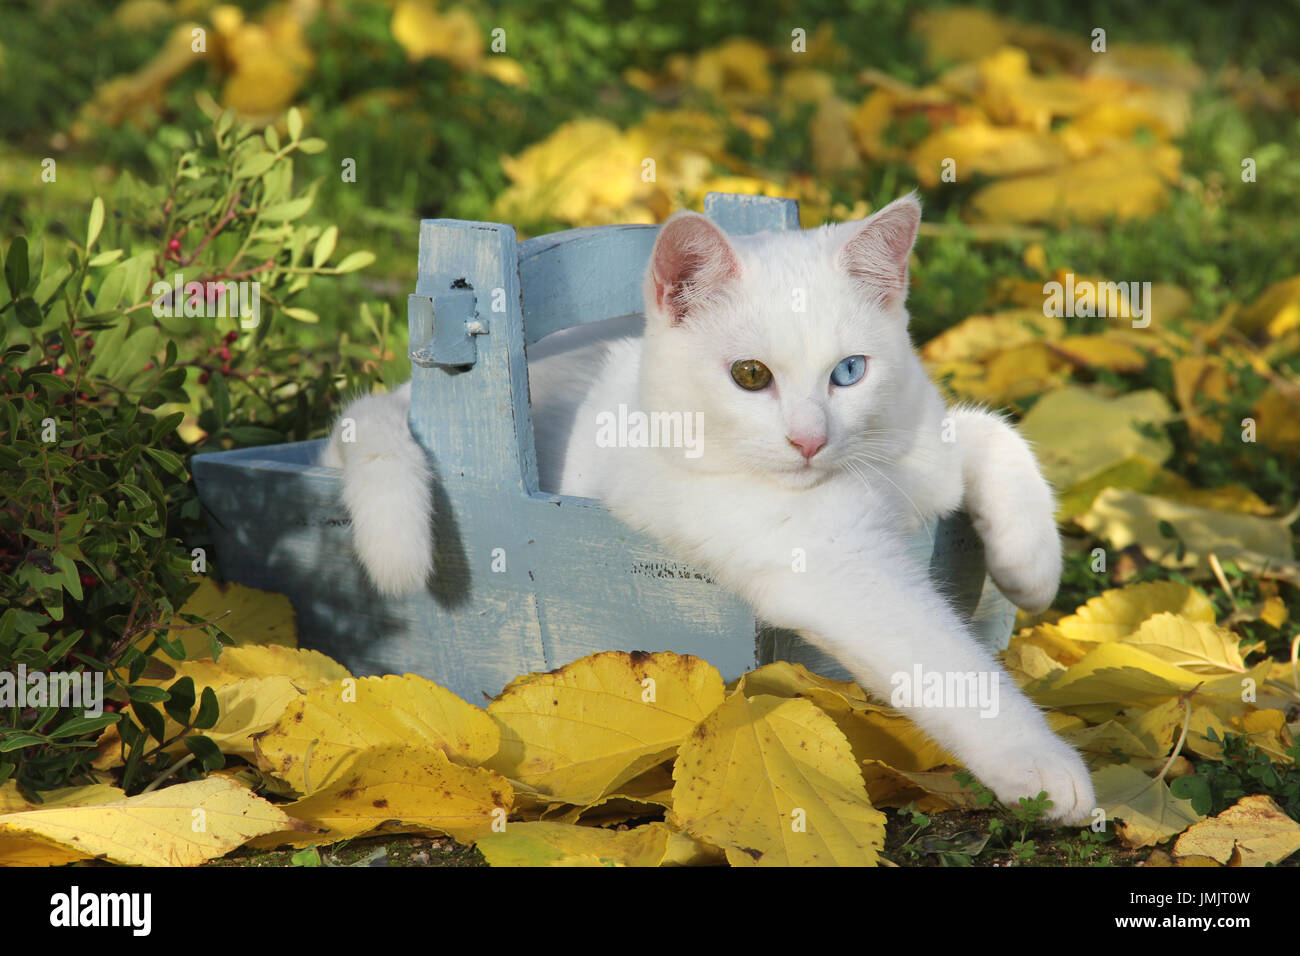 Hauskatze, weiss, Odd-eyed, liegend in einem Blumentopf im Herbst verlassen Stockfoto